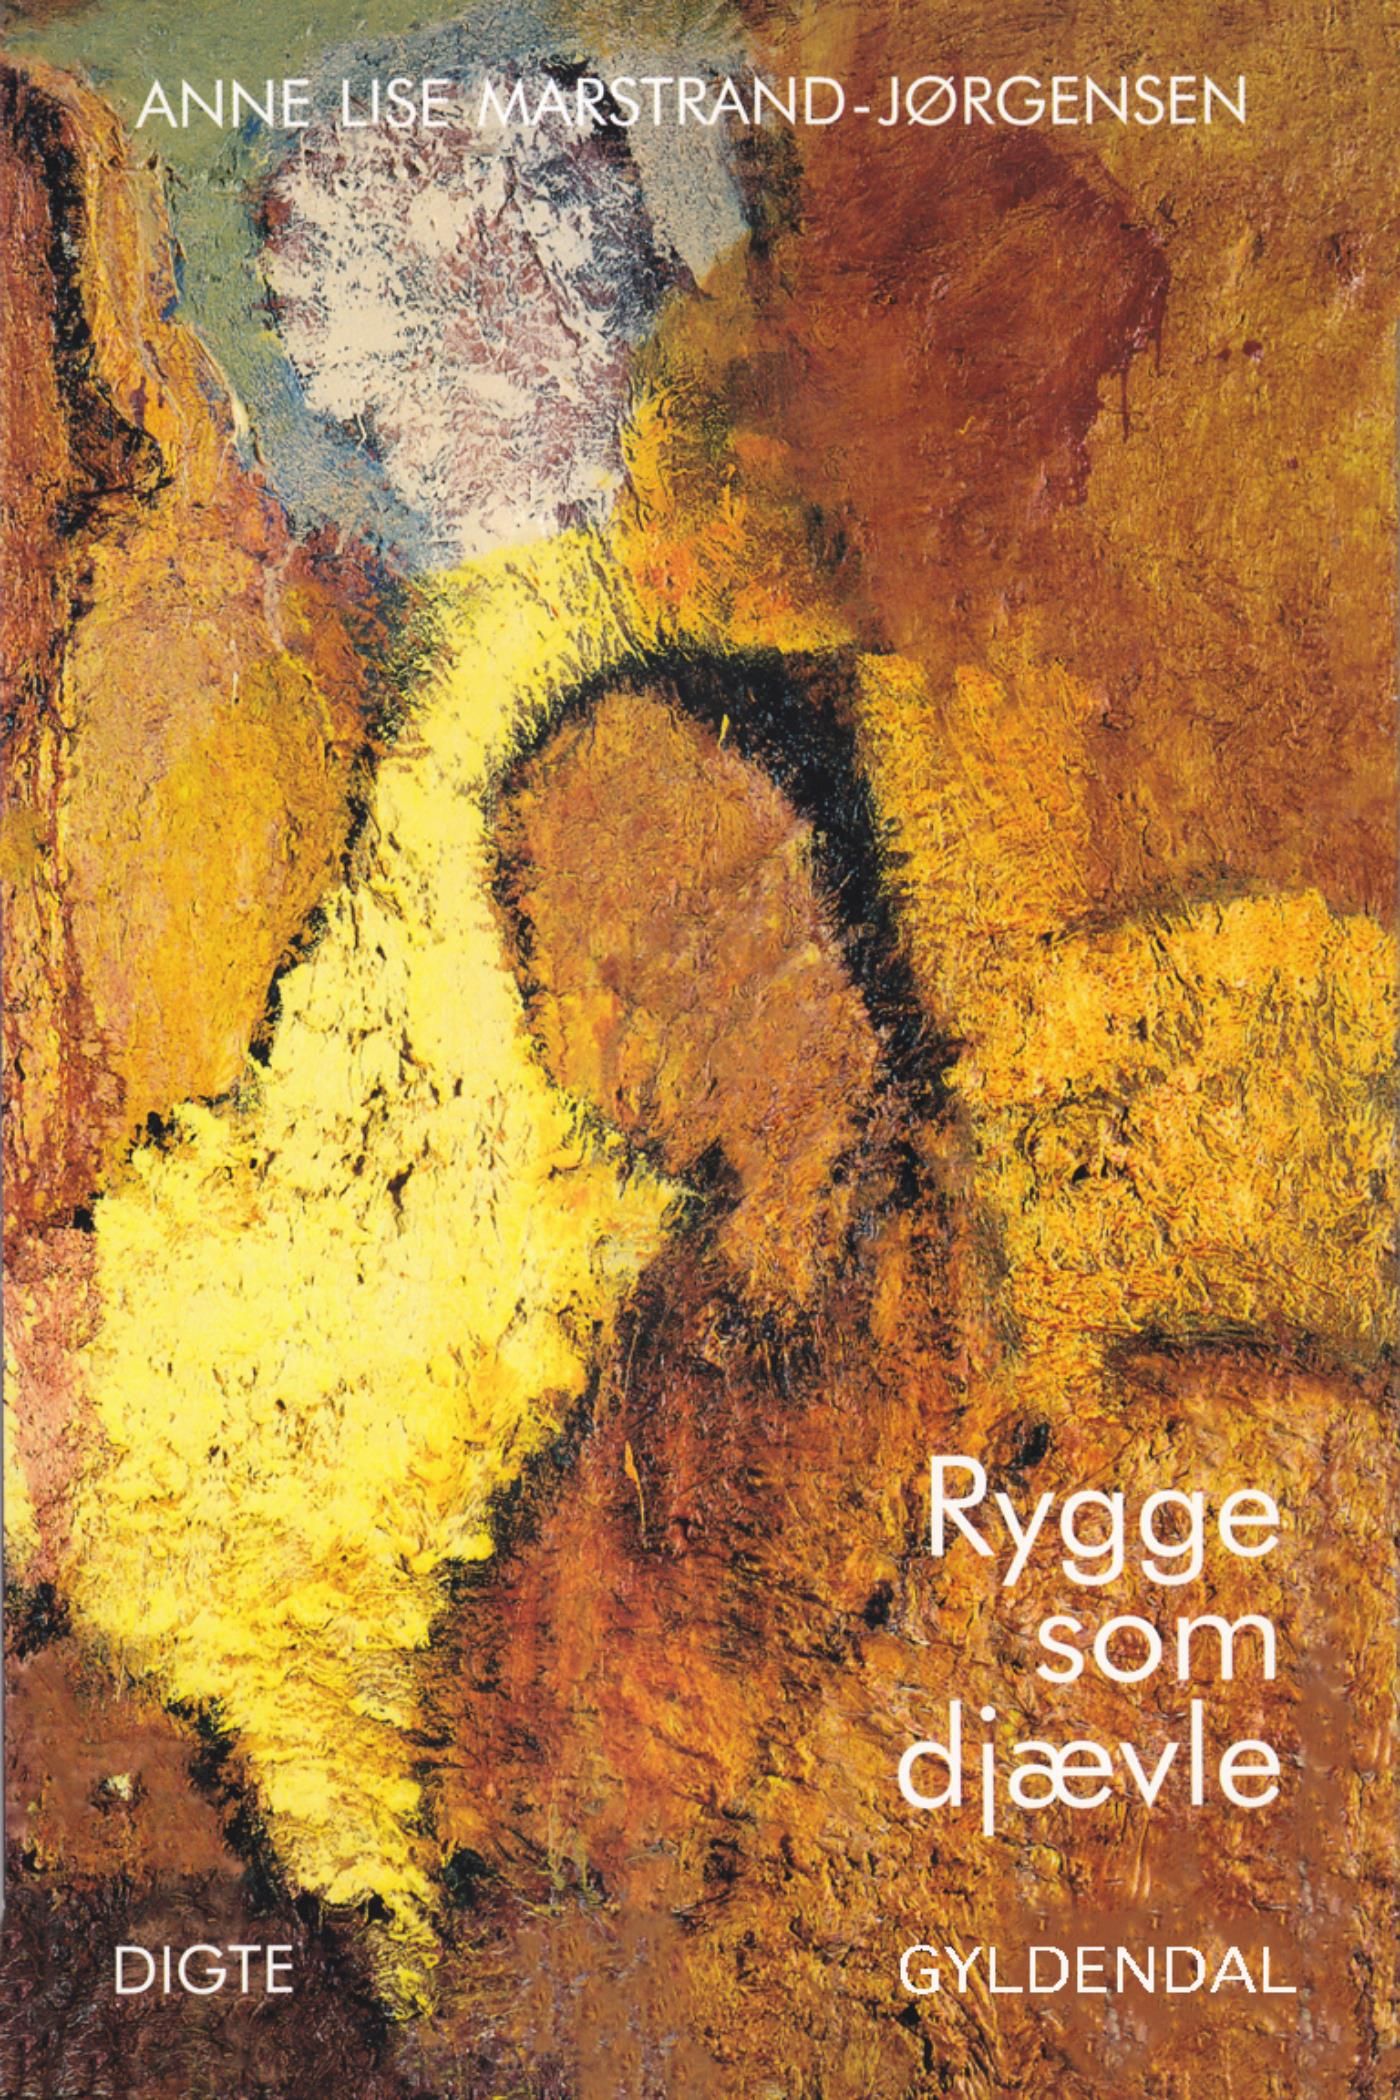 Rygge som djævle, eBook by Anne Lise Marstrand-Jørgensen